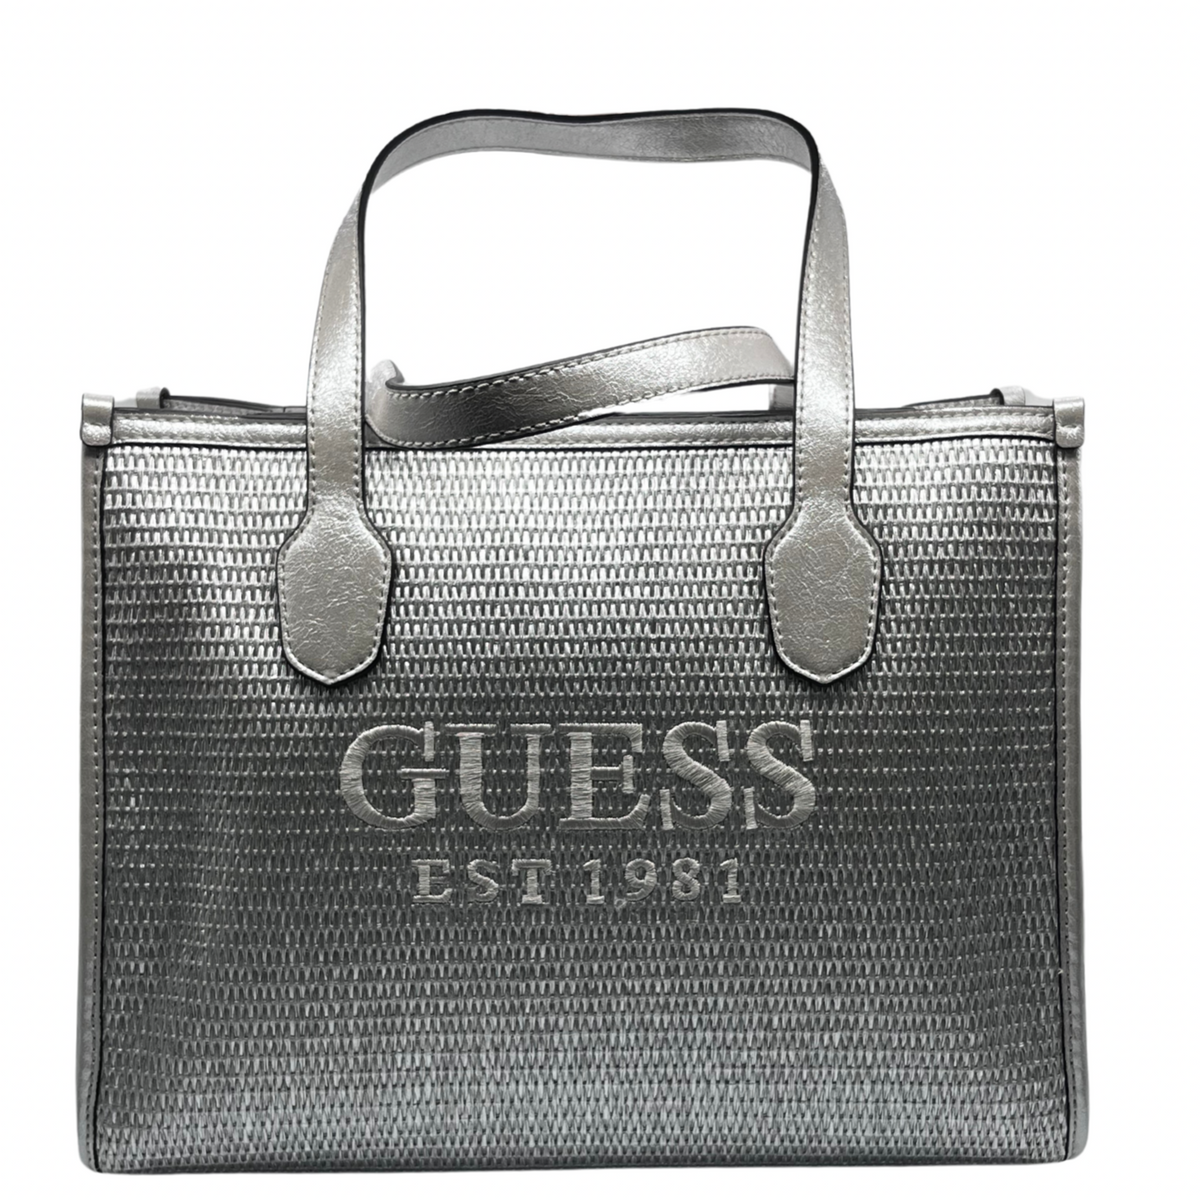 Guess Silver Woven Handbag